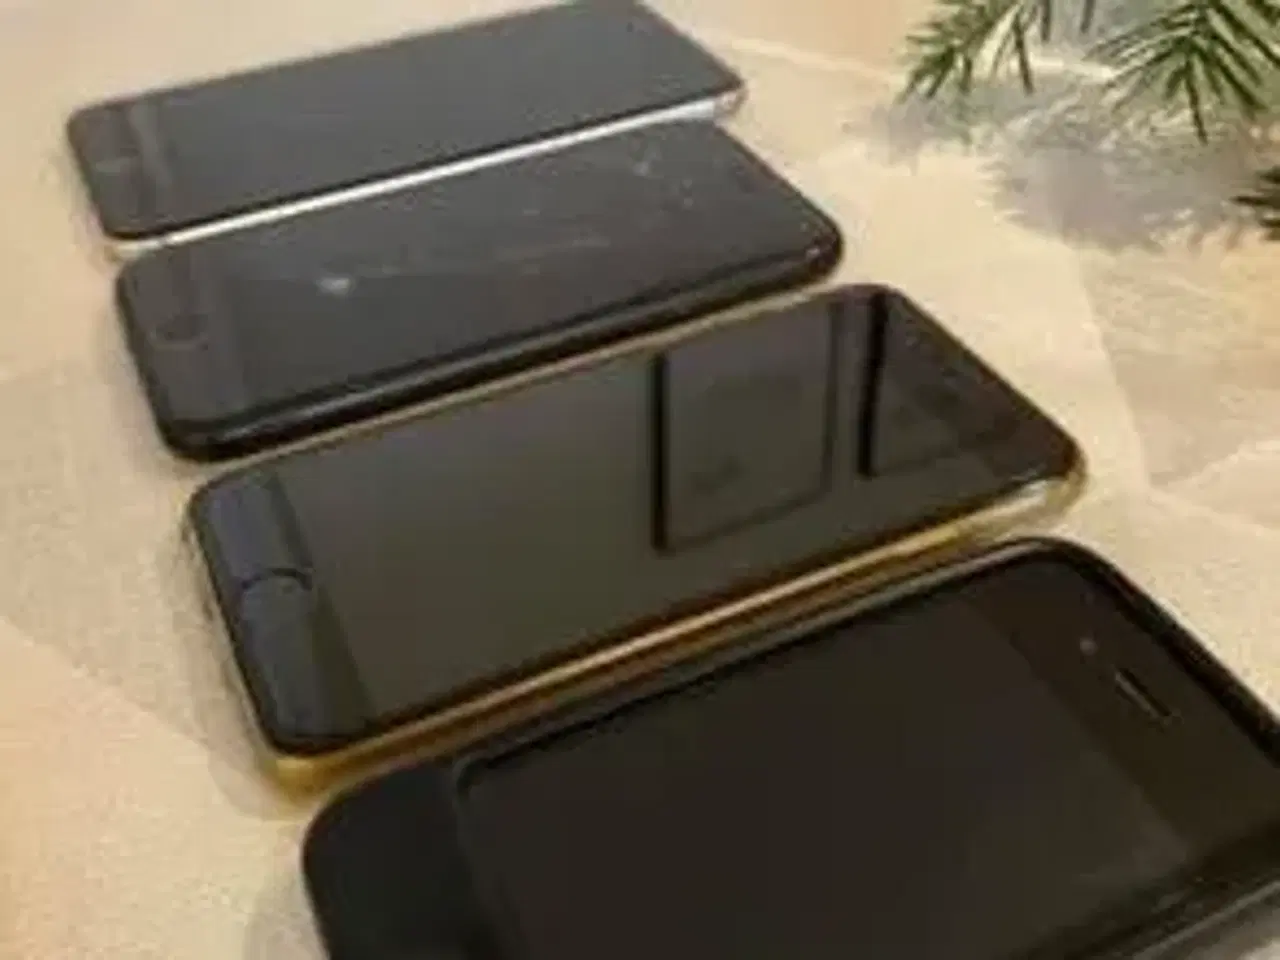 Billede 2 - 4 forskellige iPhones